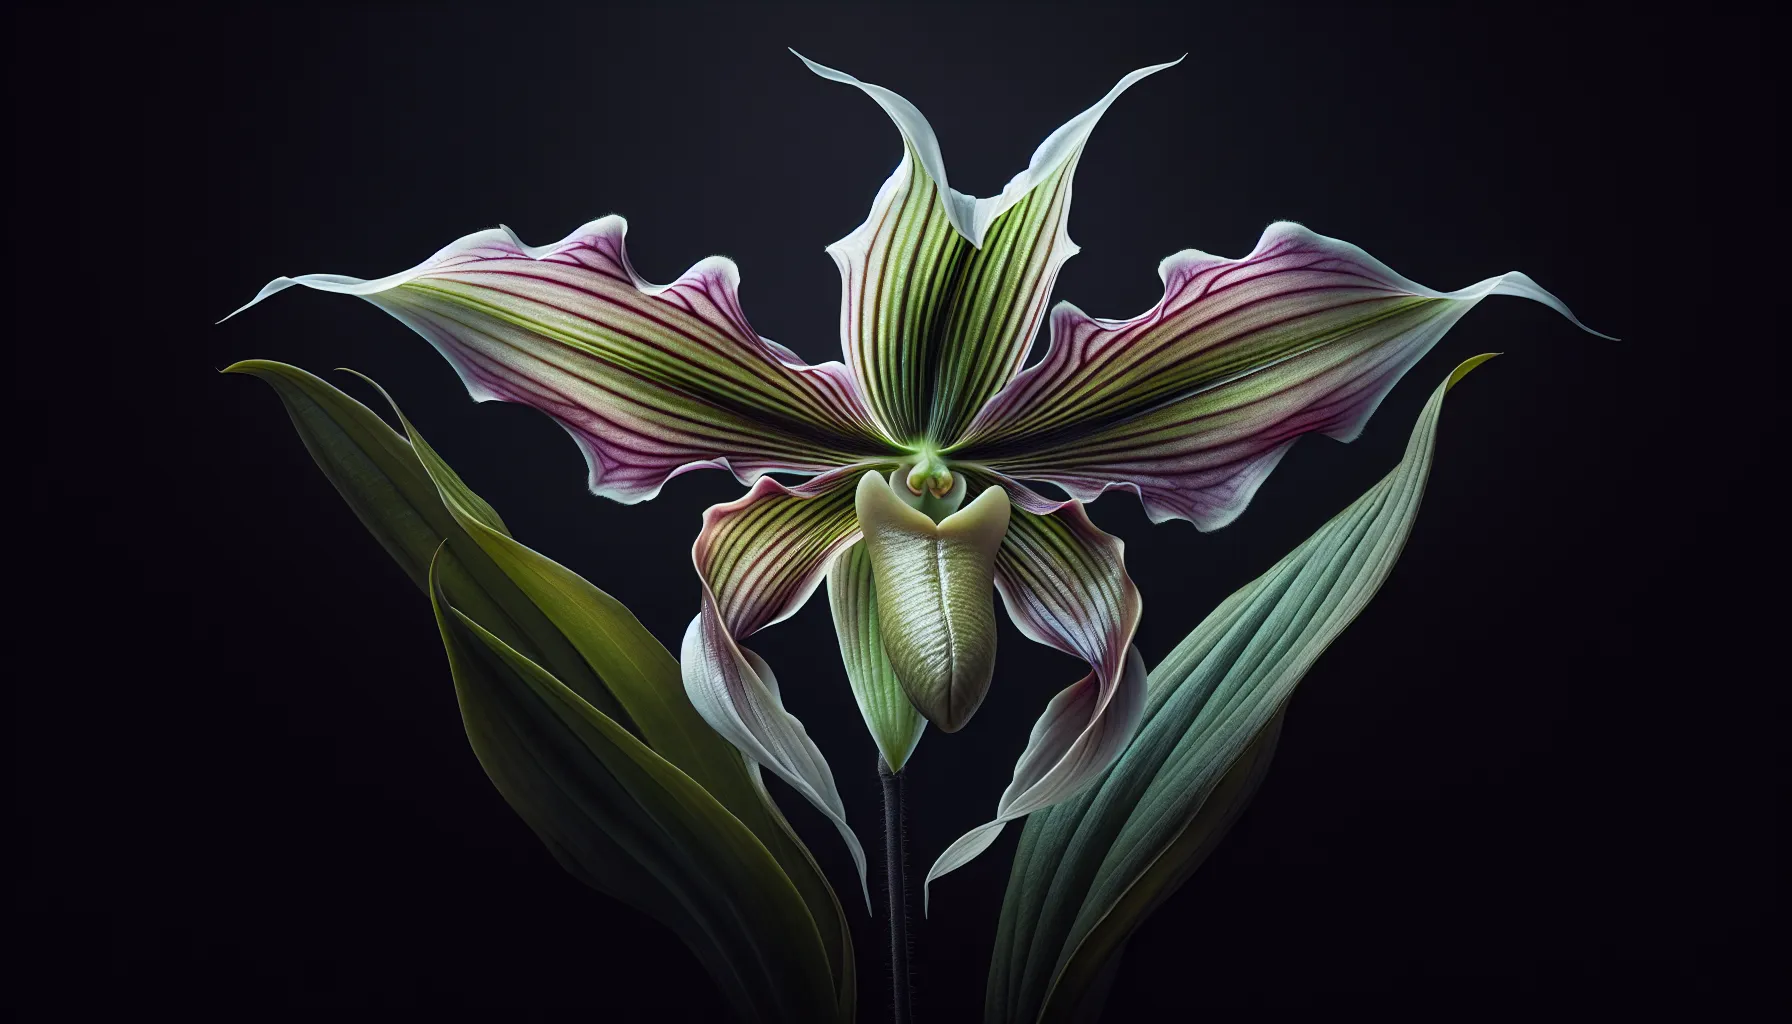 Imagen de una flor murciélago en plena floración, destacando su belleza única y exótica como la orquídea de enero.